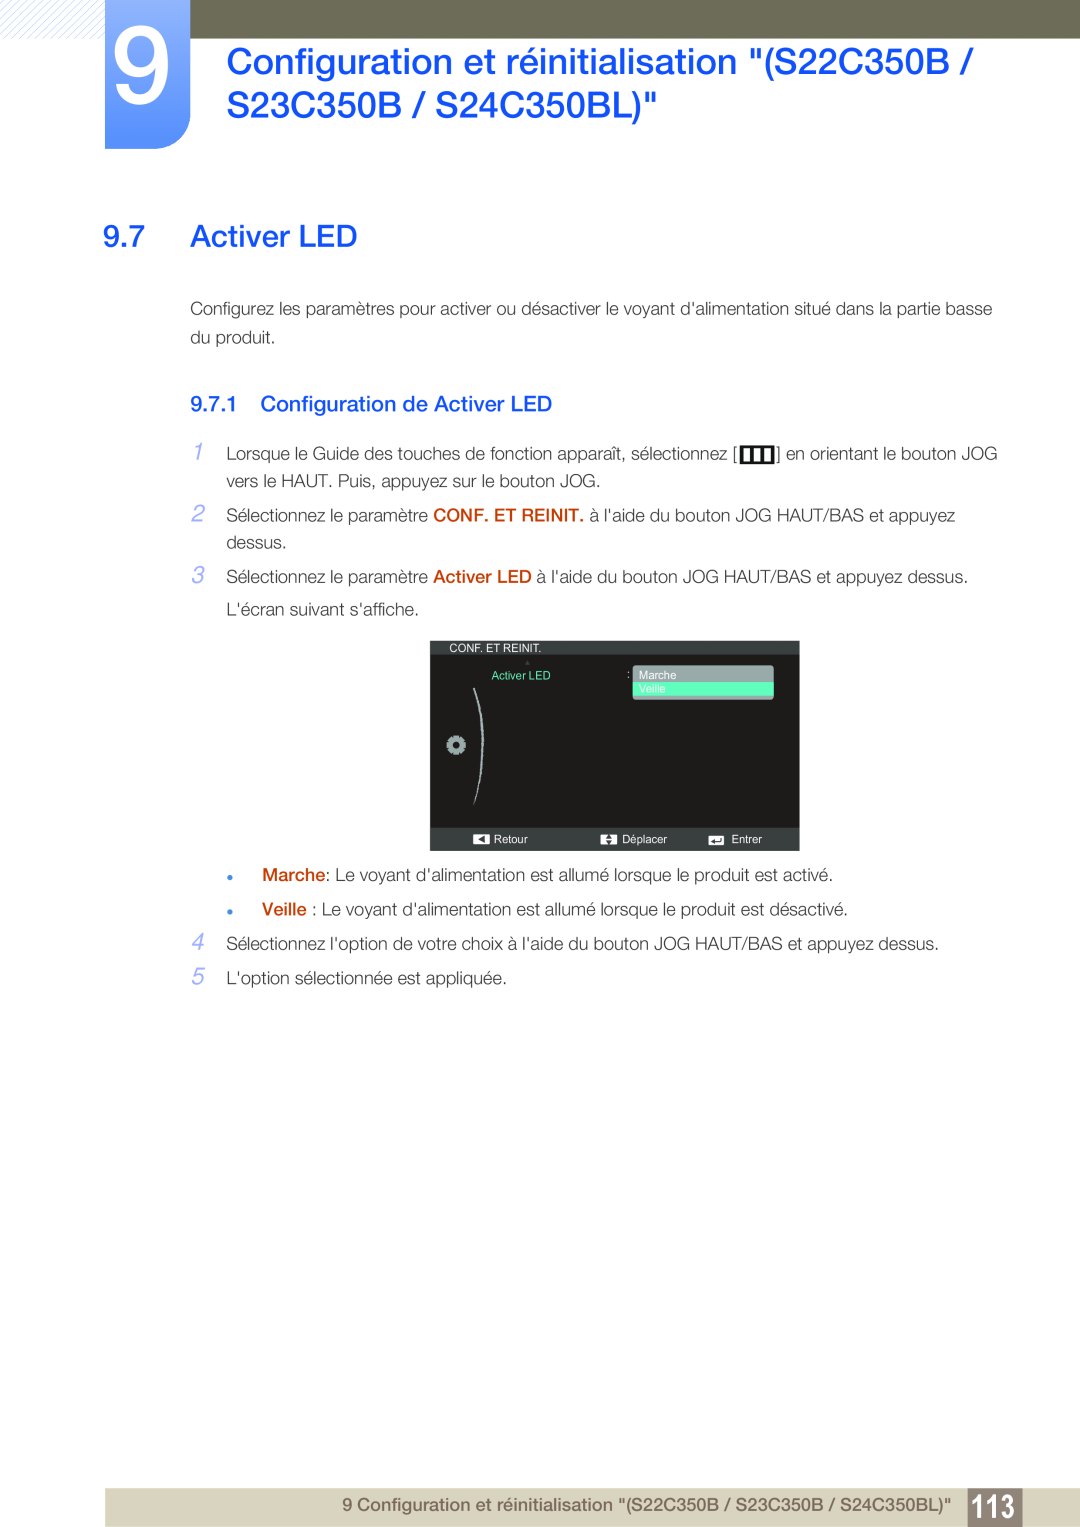 Samsung LS27C350HS/EN Configuration de Activer LED, Configuration et réinitialisation S22C350B / S23C350B / S24C350BL 